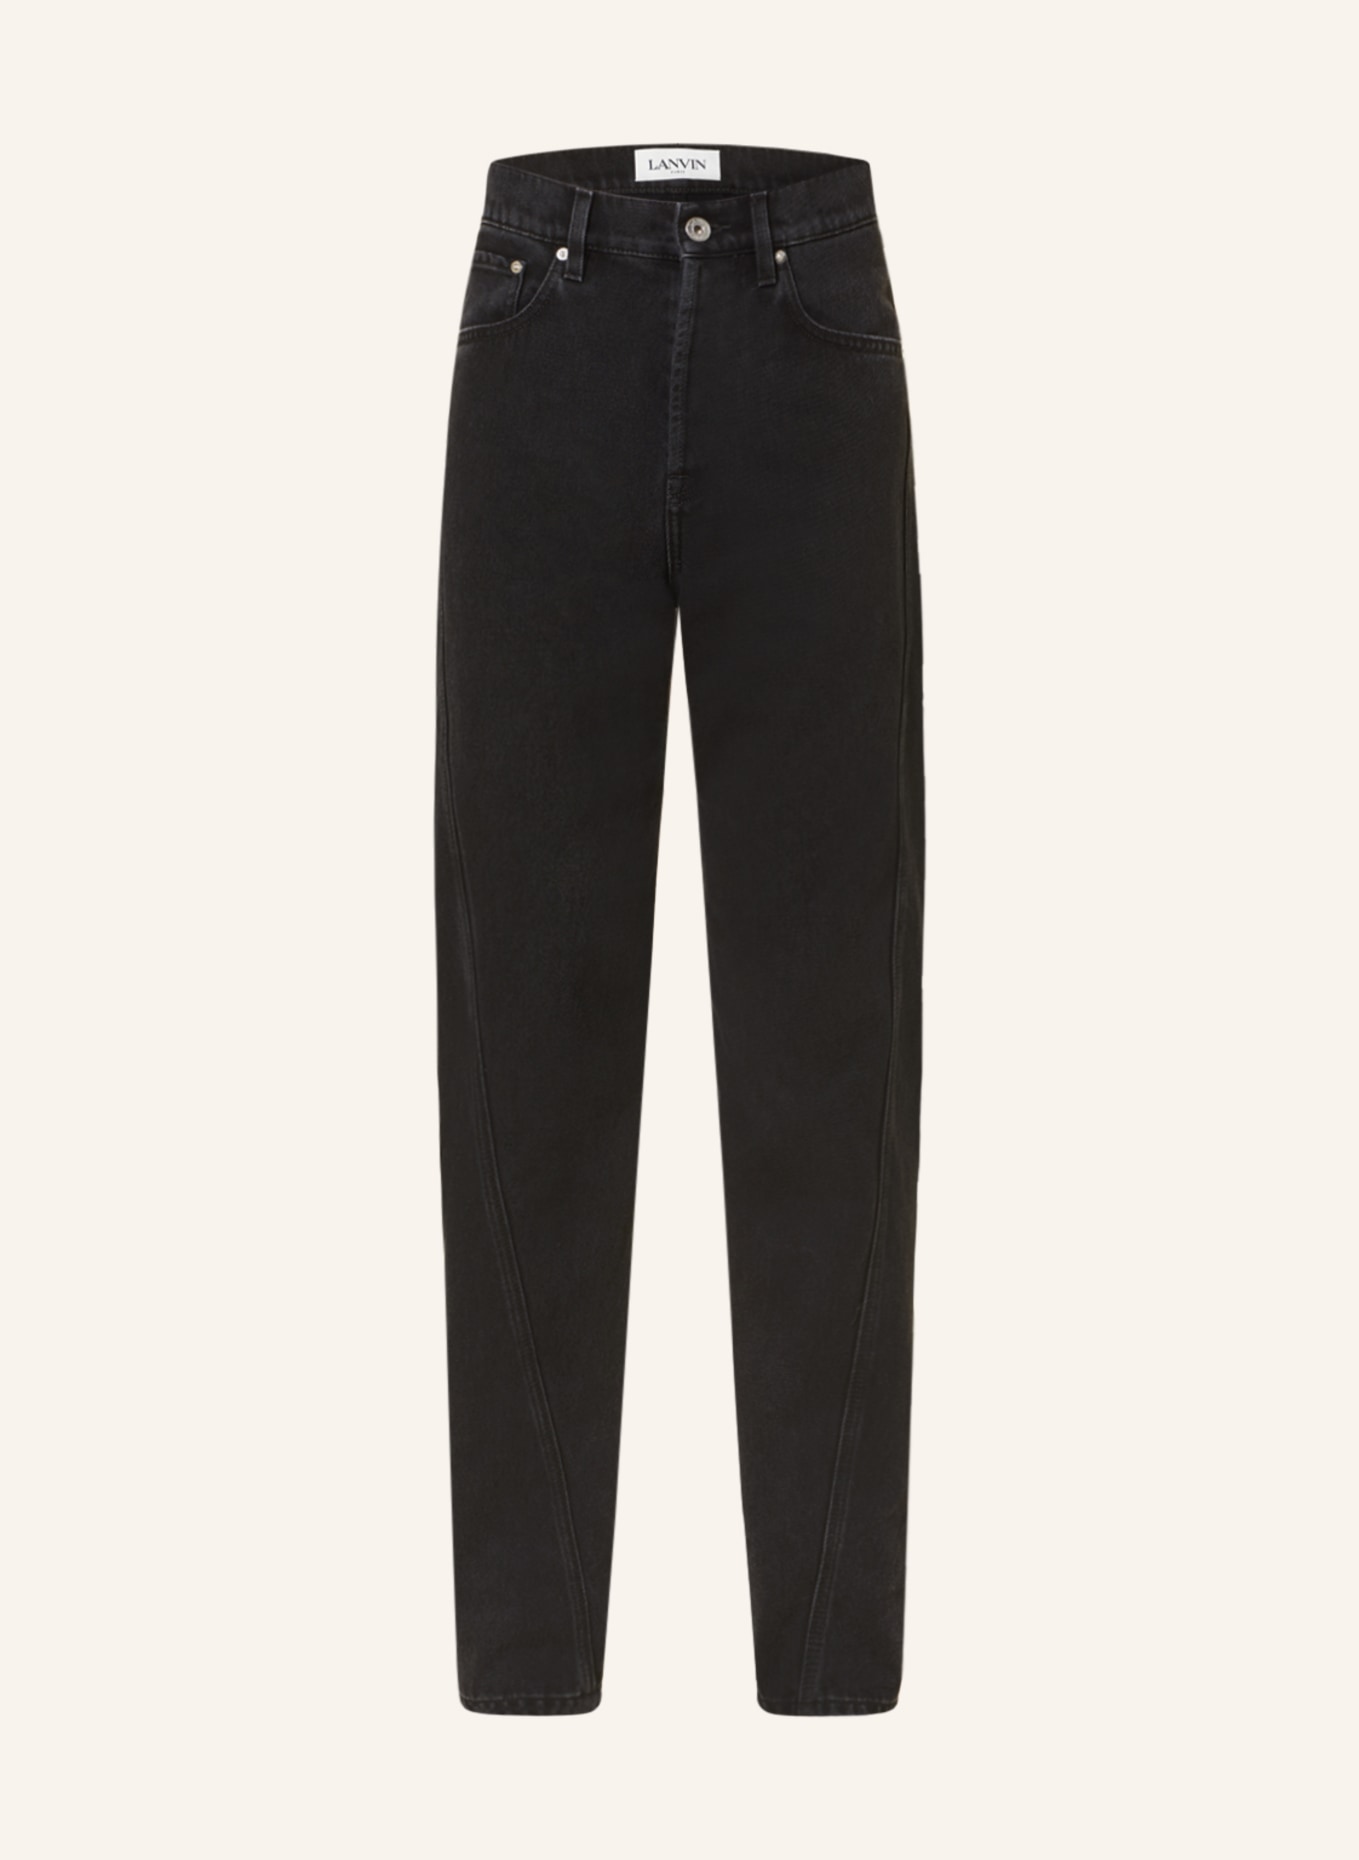 LANVIN Jeans regular fit, Color: 10 BLACK (Image 1)